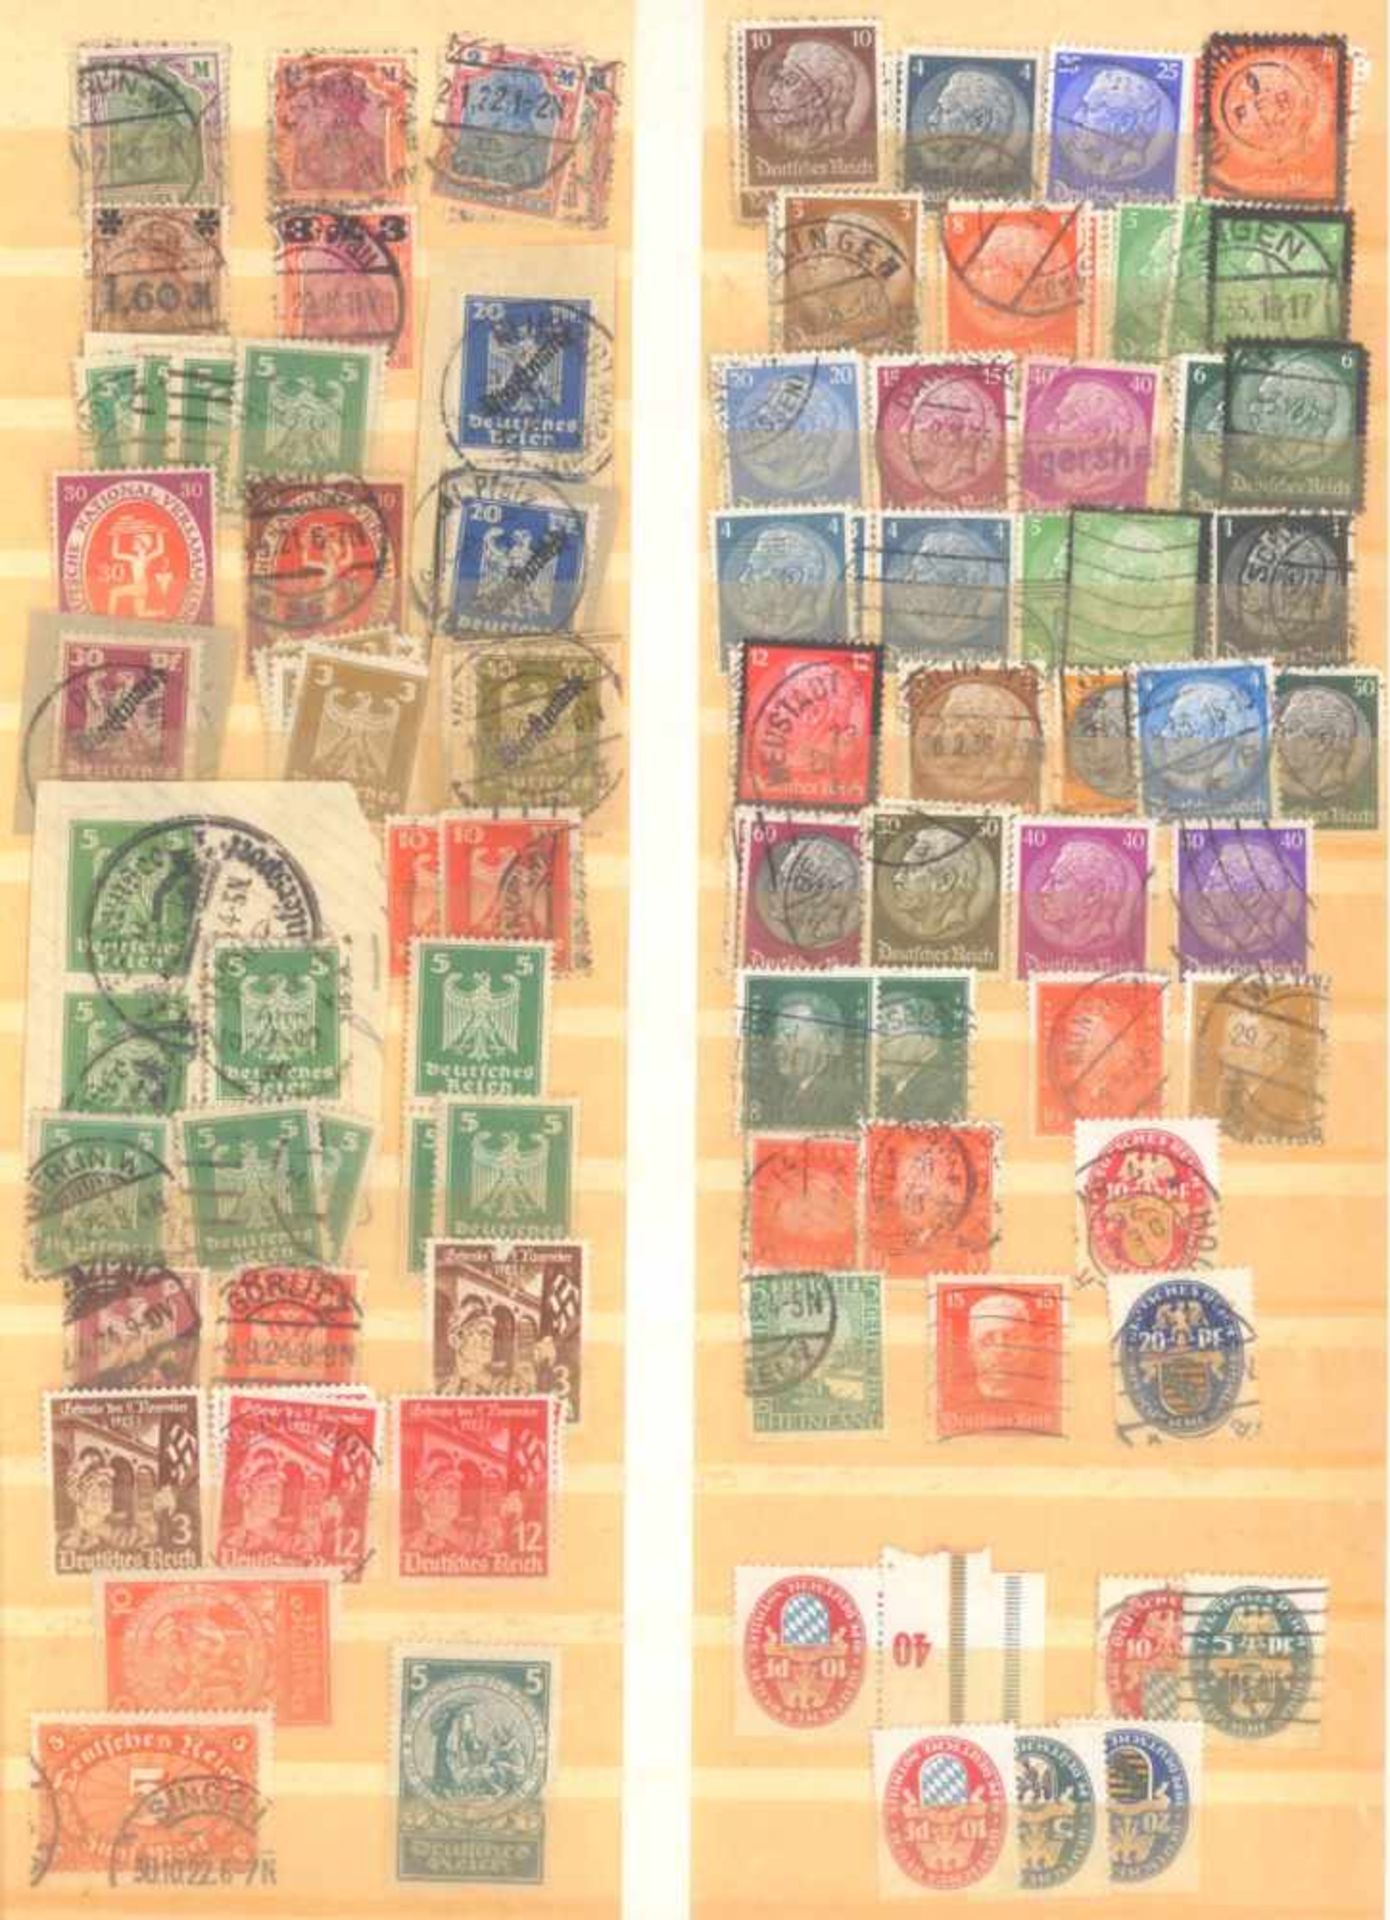 FRANKENTHALER NACHLASSuriger Nachlass mit Briefmarken und Belegen. Dabei DeutschesReich, altes - Bild 7 aus 46